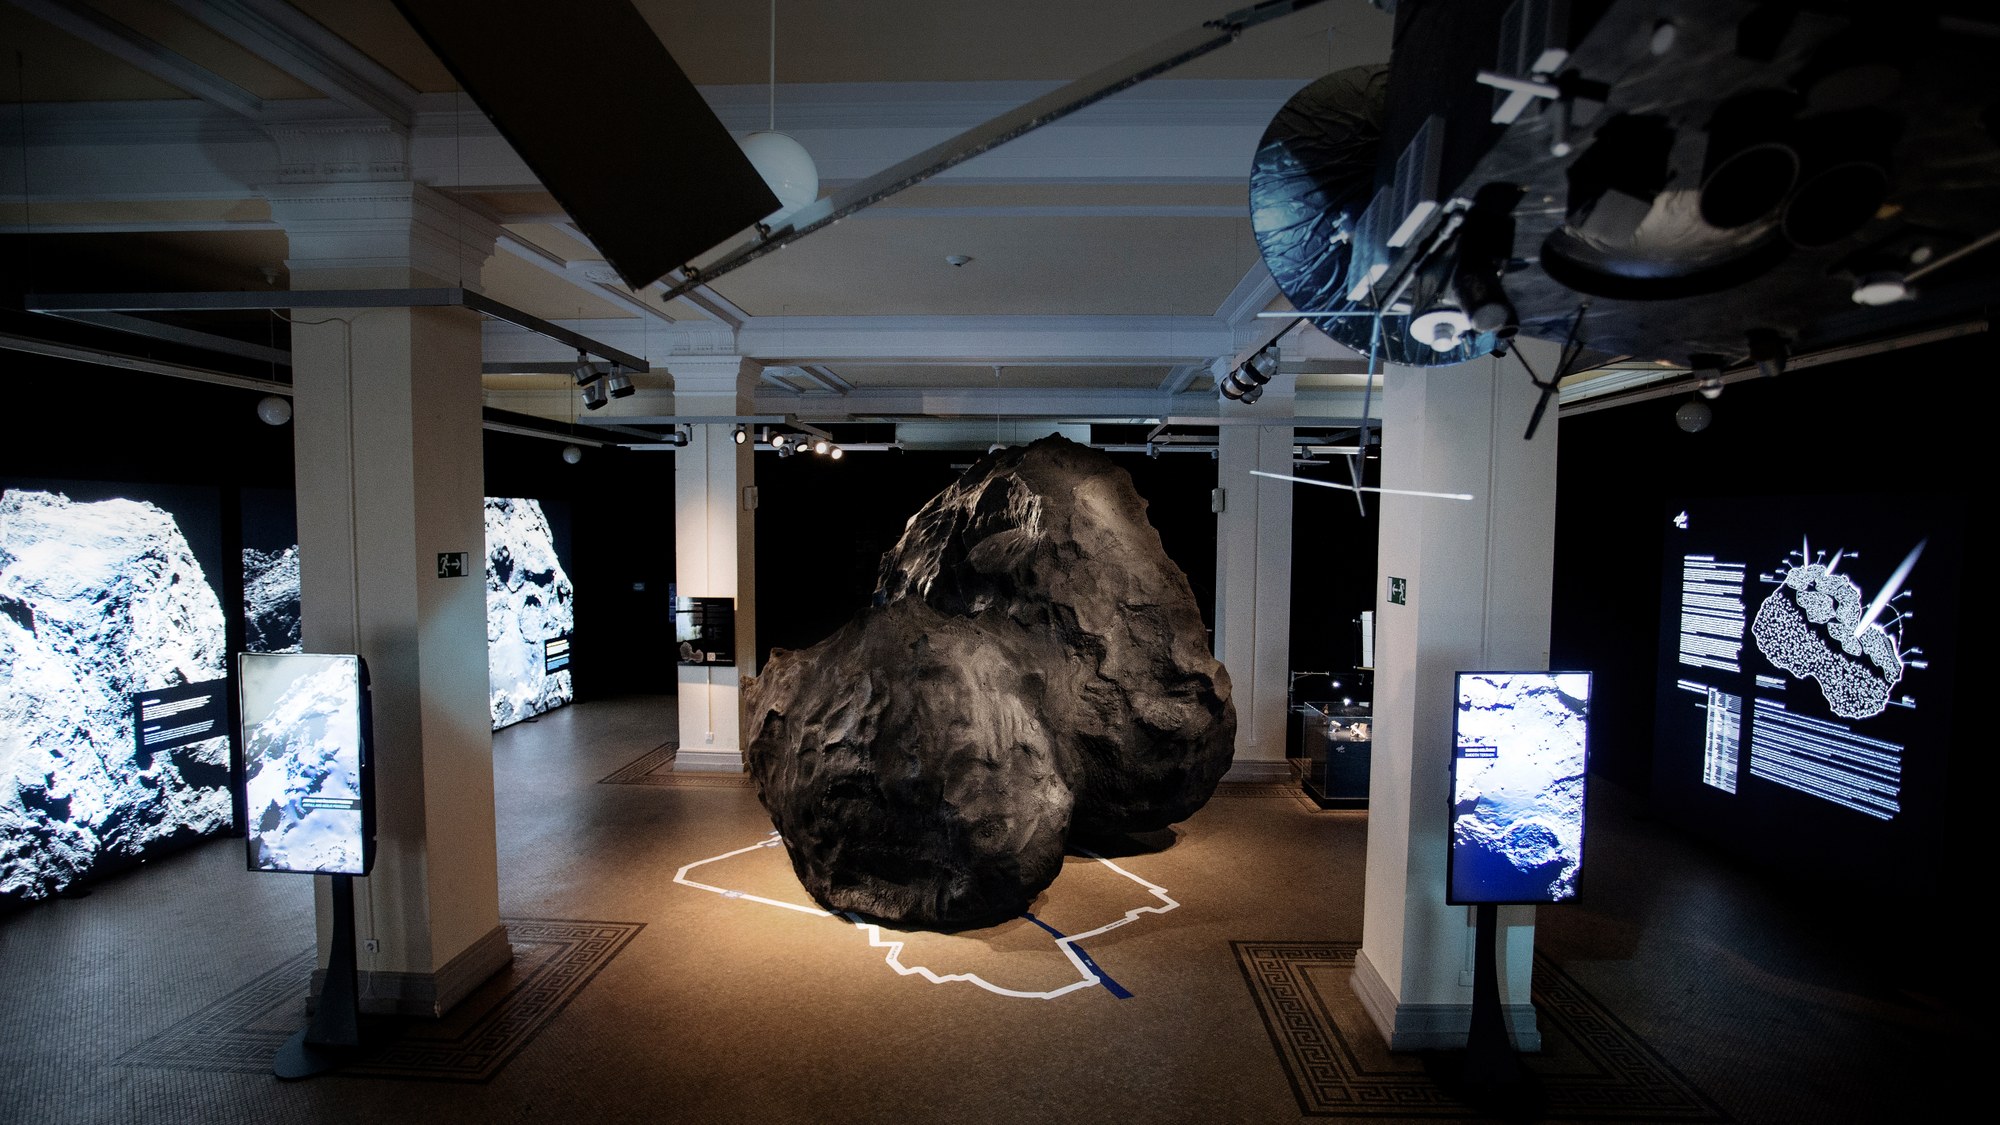 Modell des Kometen Churyumov-Gerasimenko in der Ausstellung